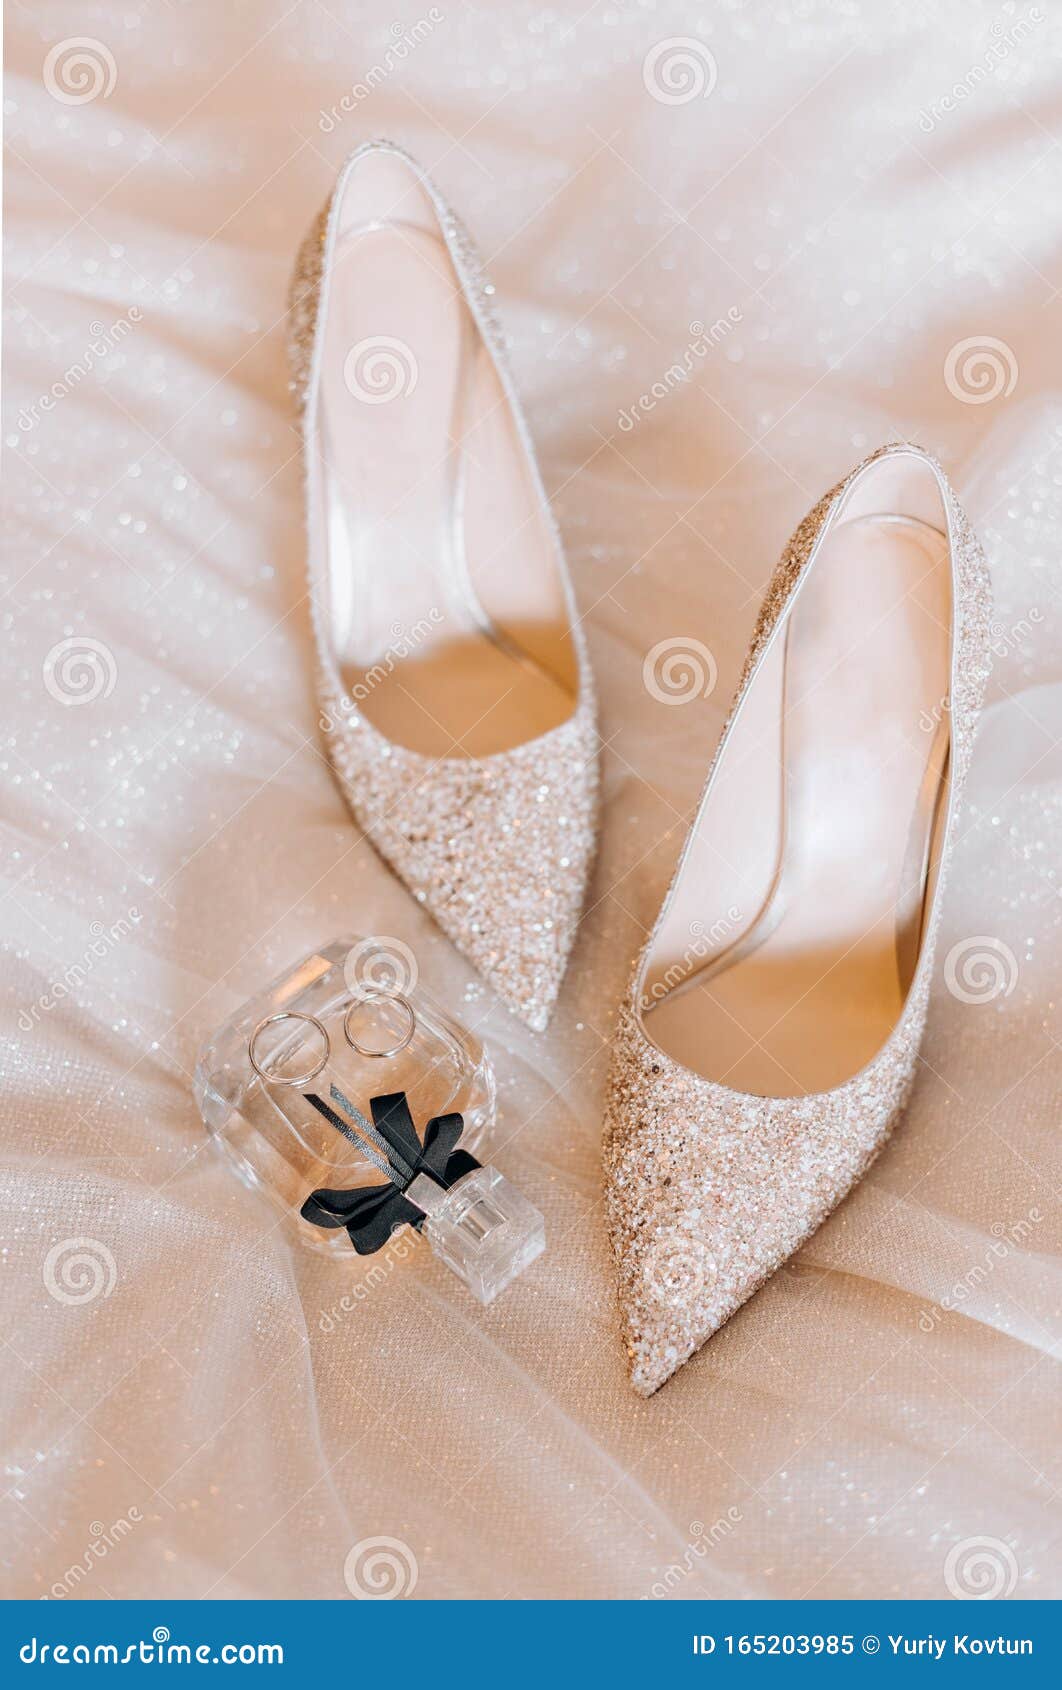 Anillo Para Estiloso Zapatos Damas De Honor De Moda Imagen de archivo - Imagen de novias, anillo: 165203985